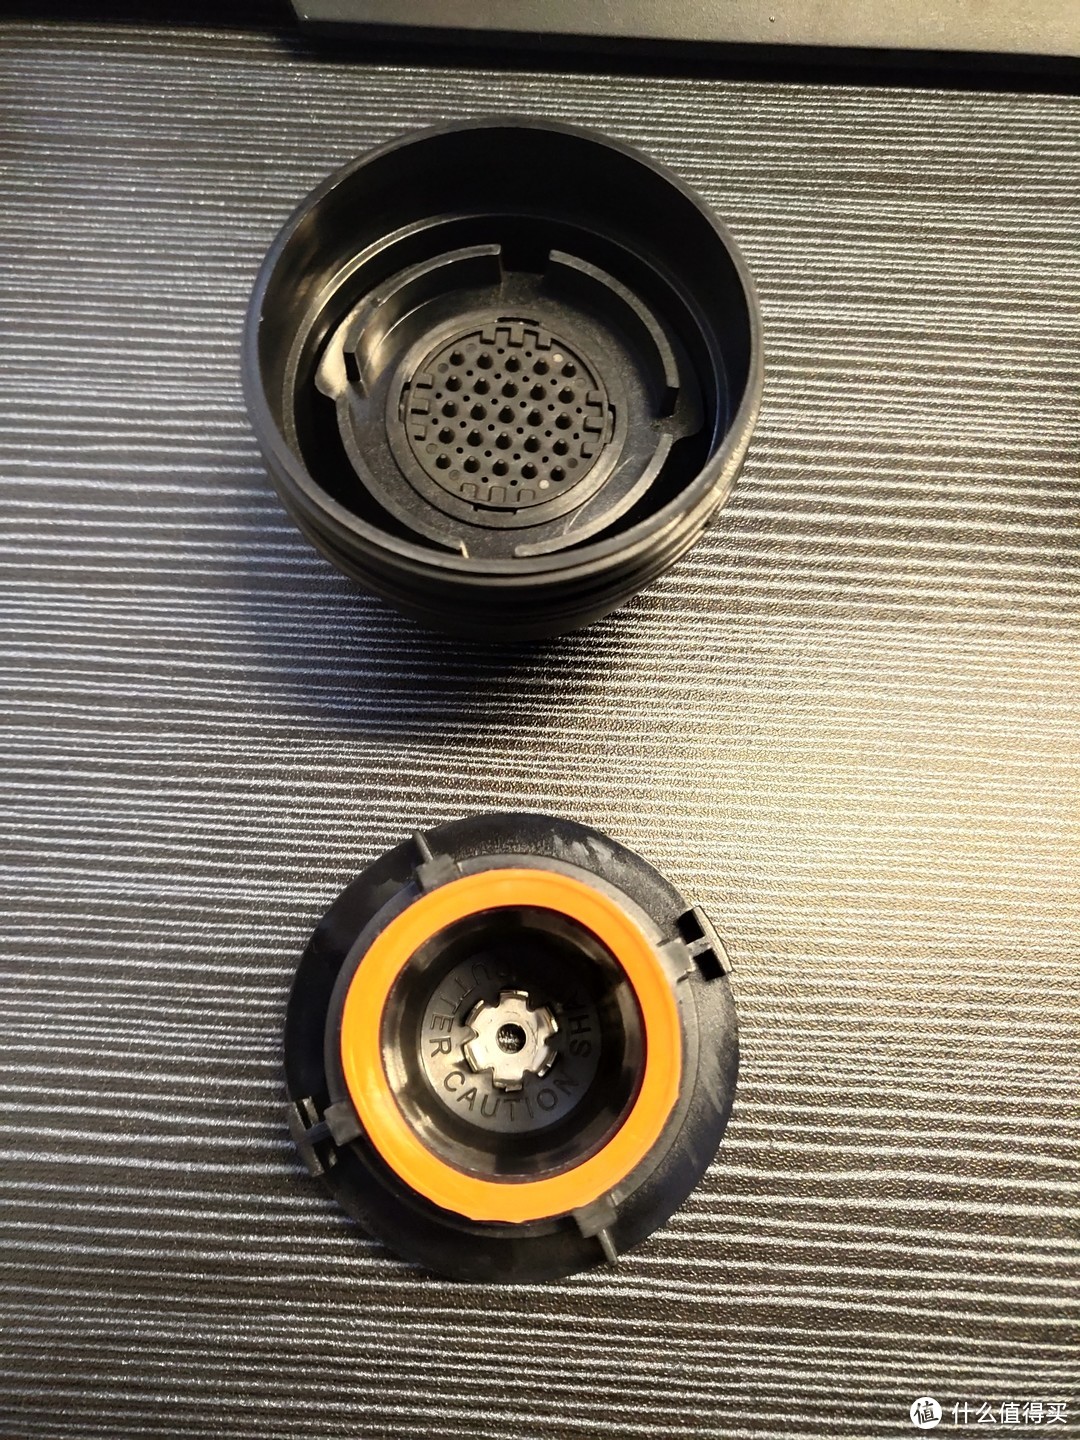 上：咖啡胶囊滤网      下：咖啡胶囊阀